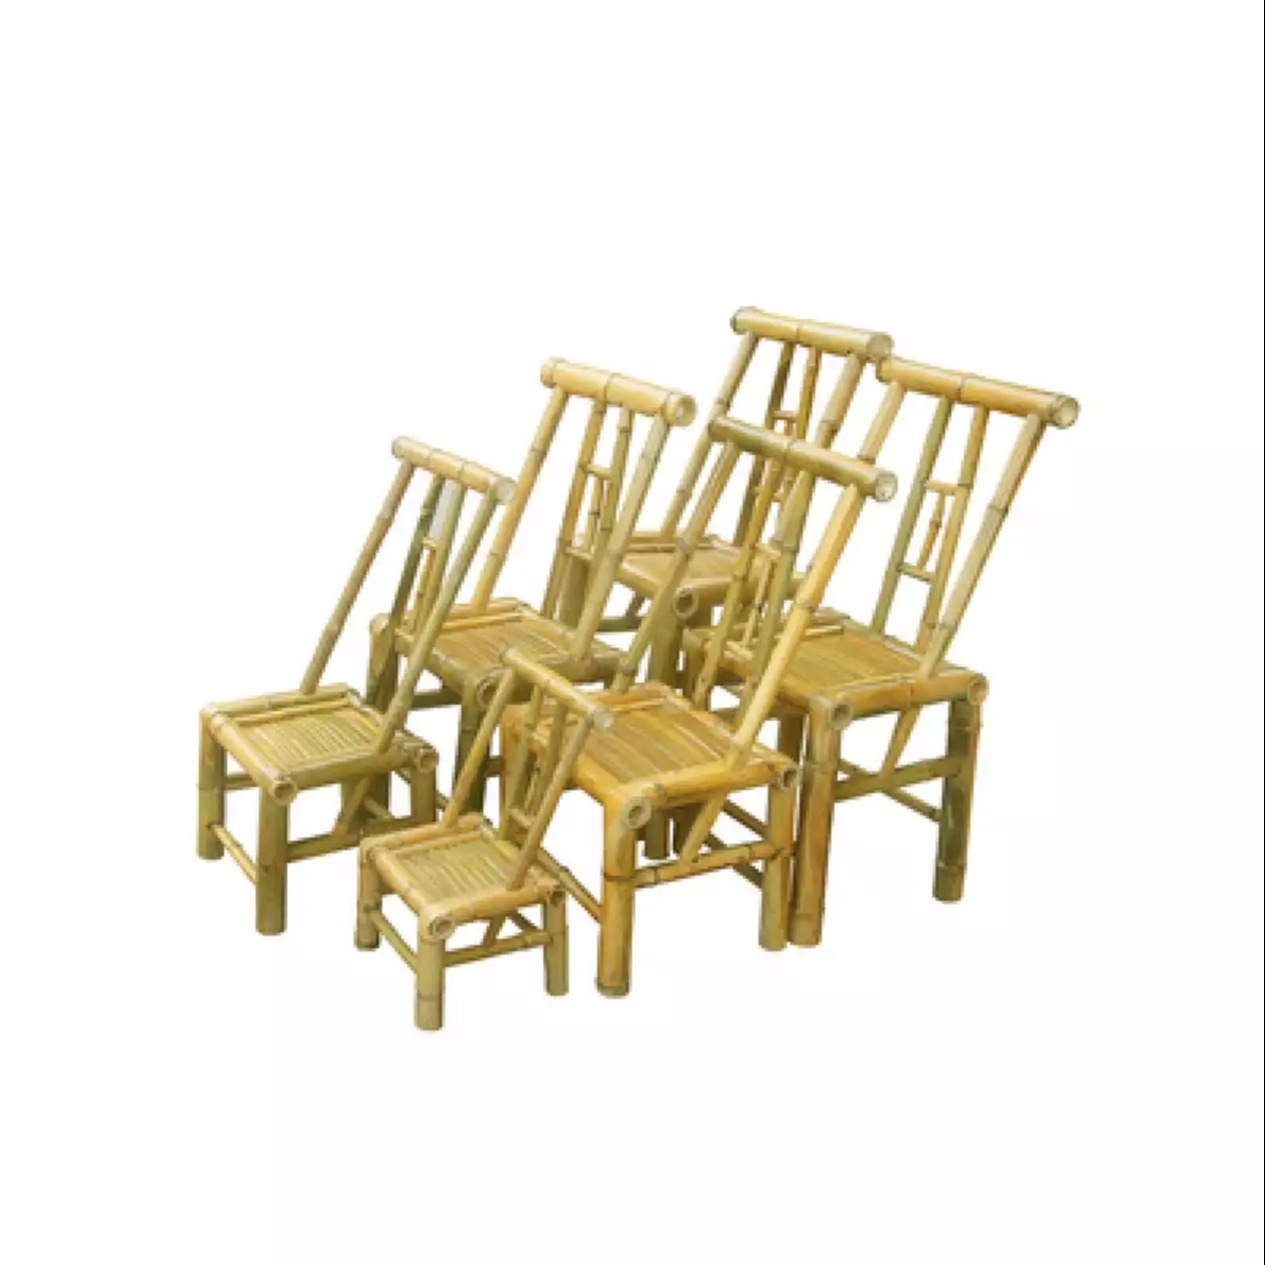 老茶馆竹椅子 质量好的竹椅子 小椅子批发 吴兴崔琦竹制品商行